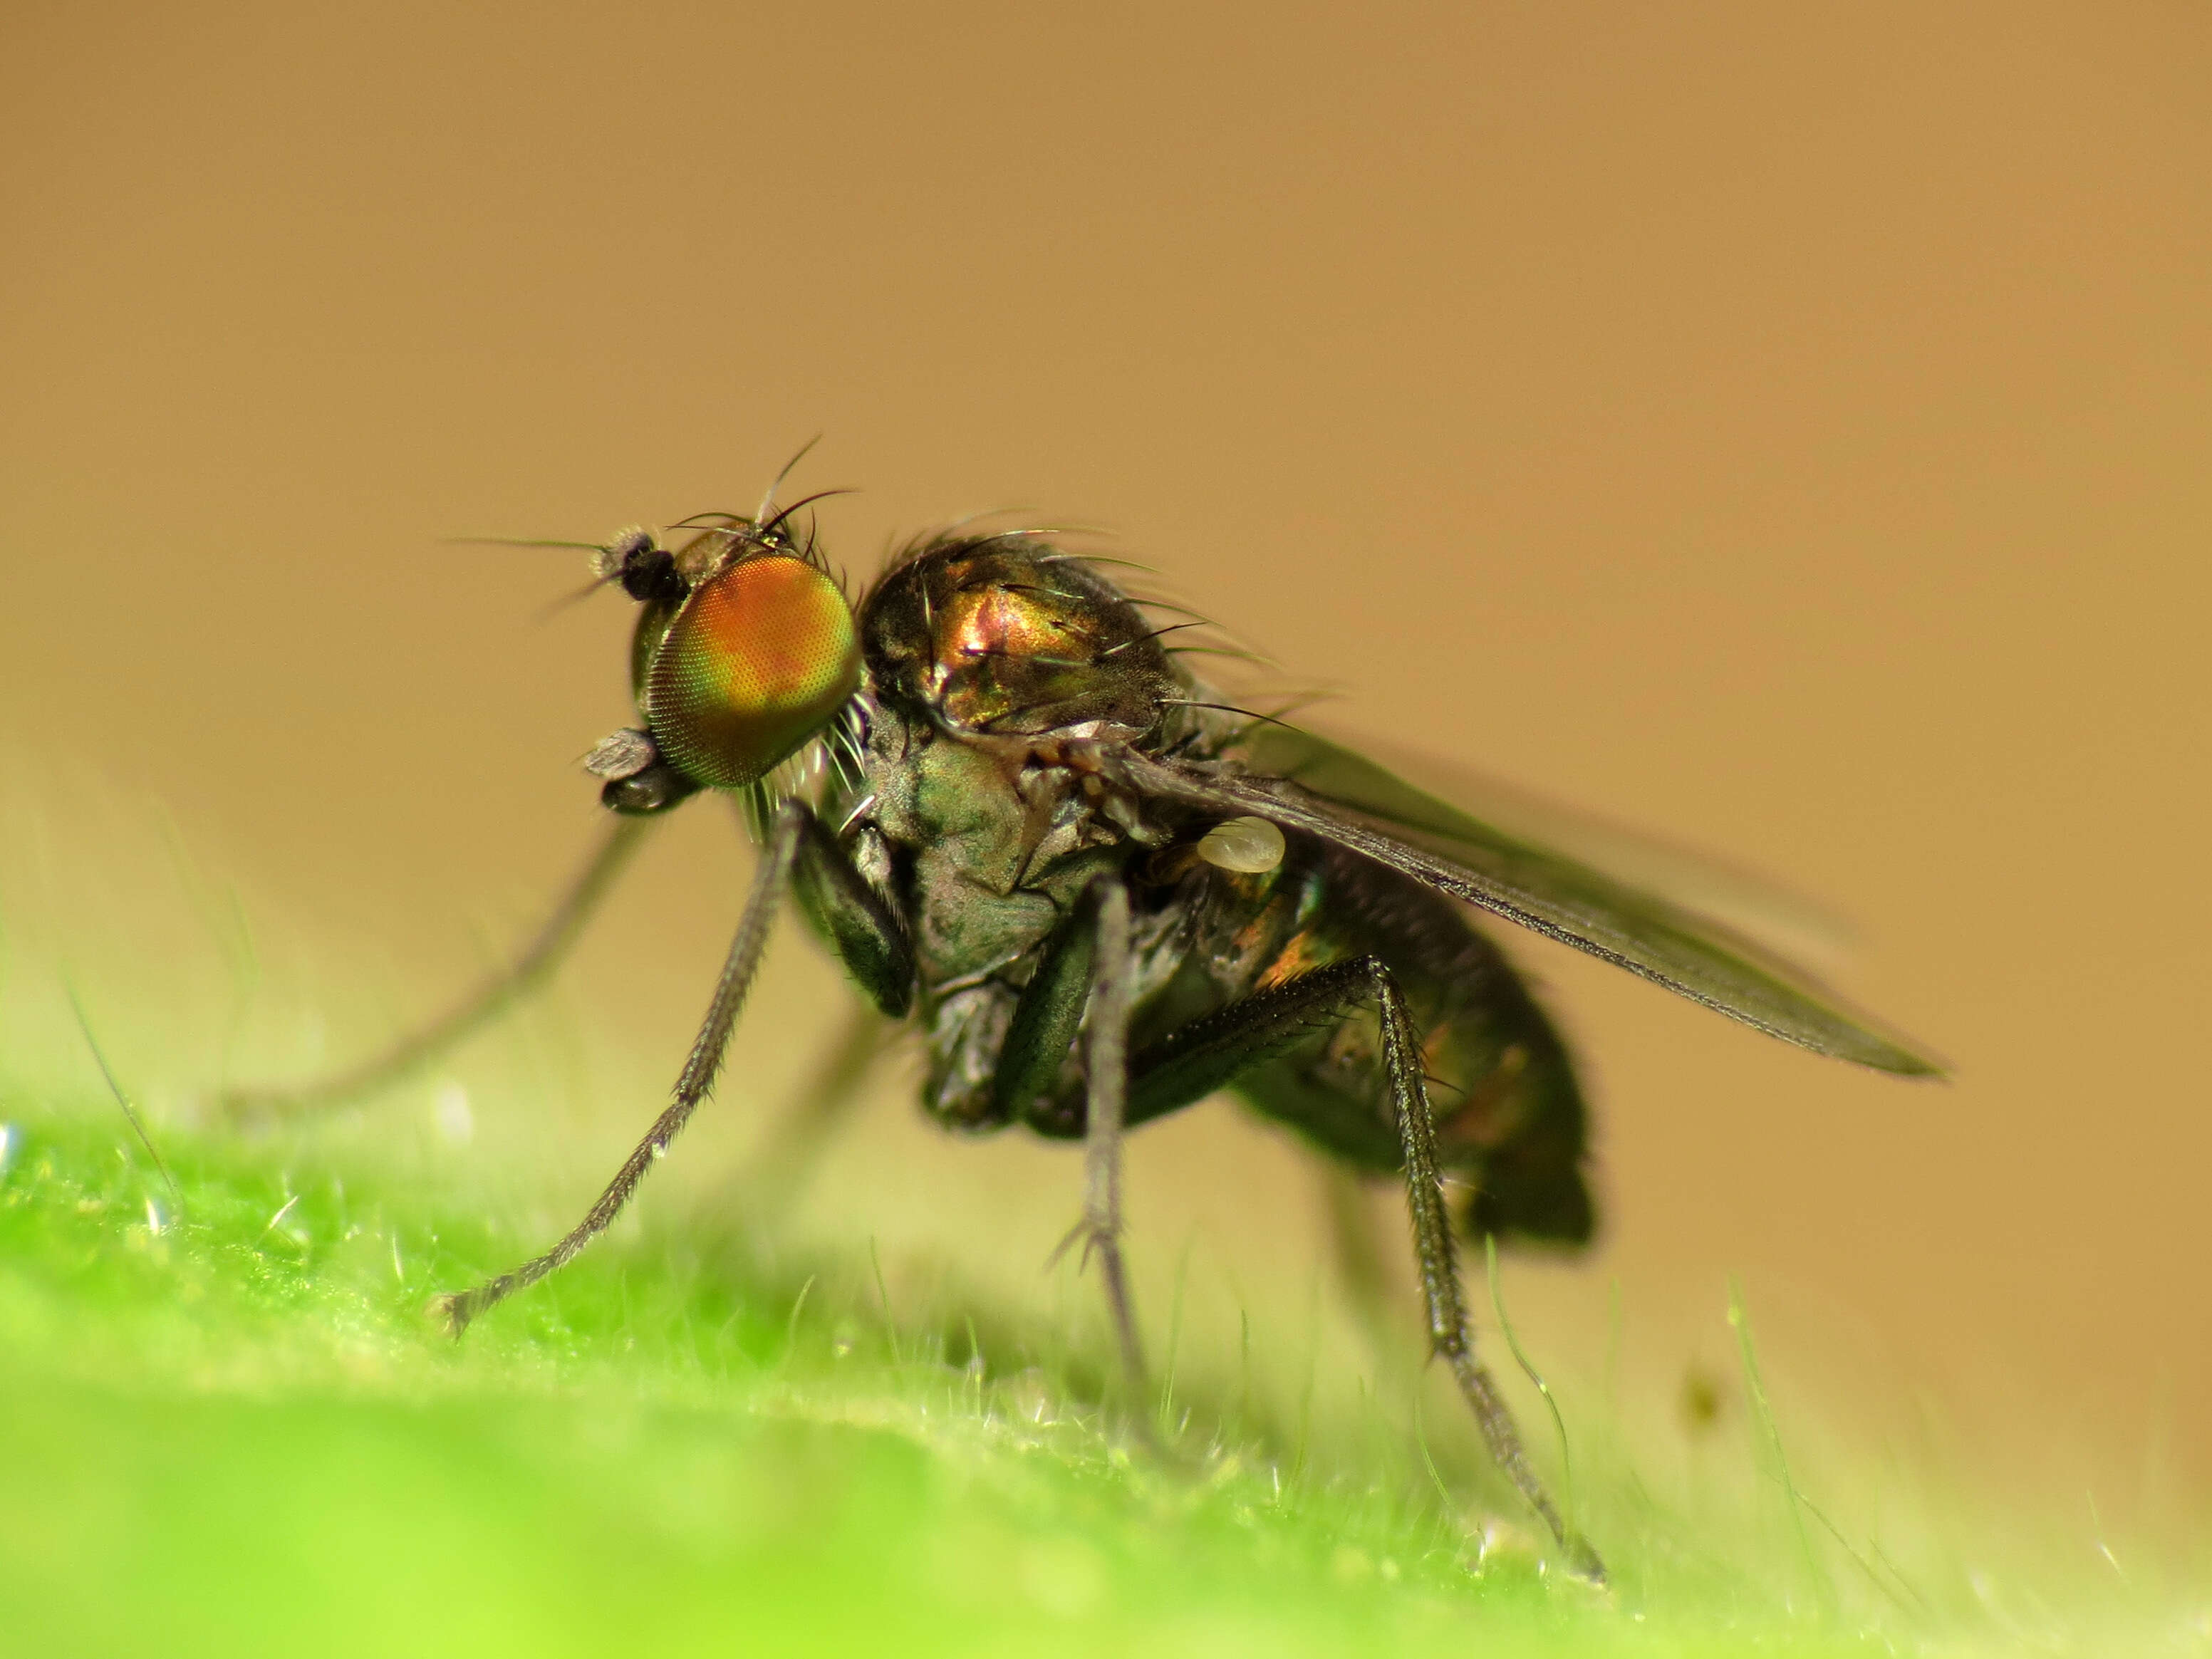 Image of vinegar flies